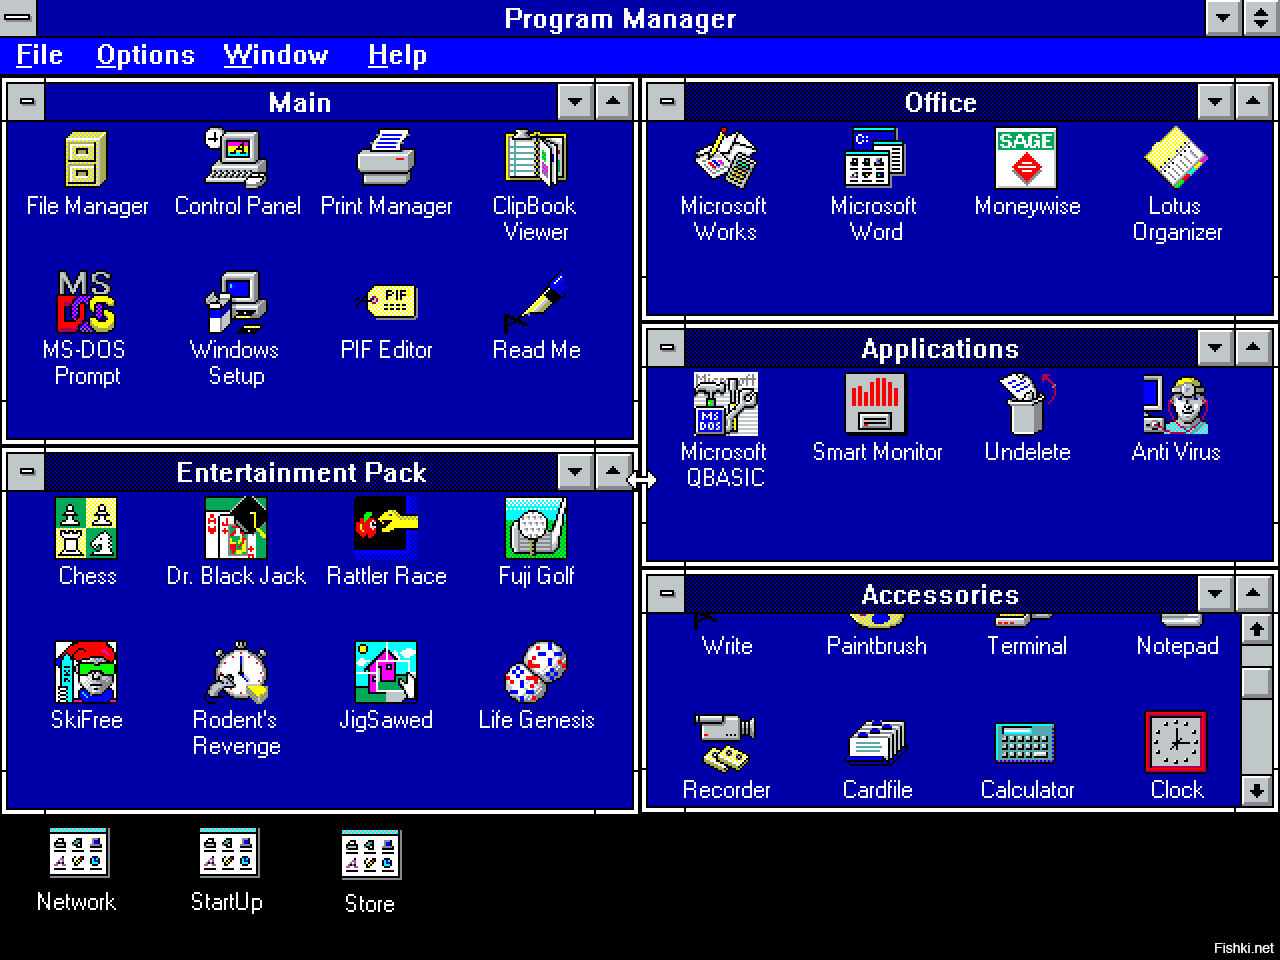 Сокеты виндовс. Интерфейс MS dos 3.0. Операционная система виндовс 3.11. Изображение интерфейса ОС Windows 3.1. Windows NT 3.1 Интерфейс.